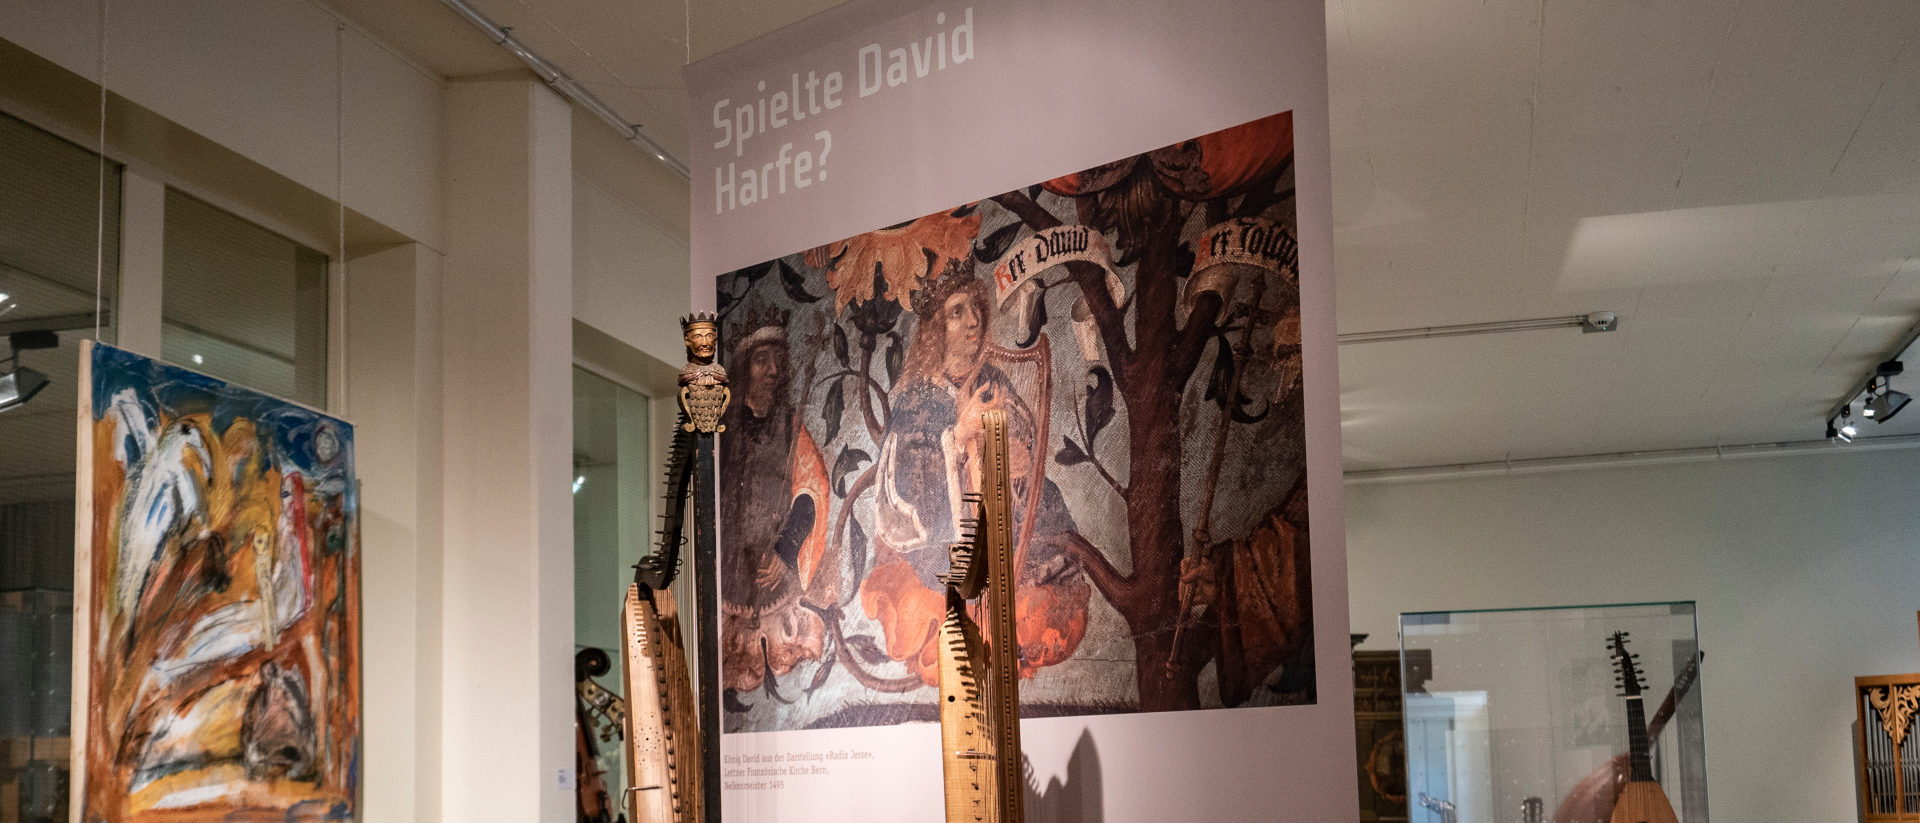 Impression aus der Ausstellung "Davids Harfe"